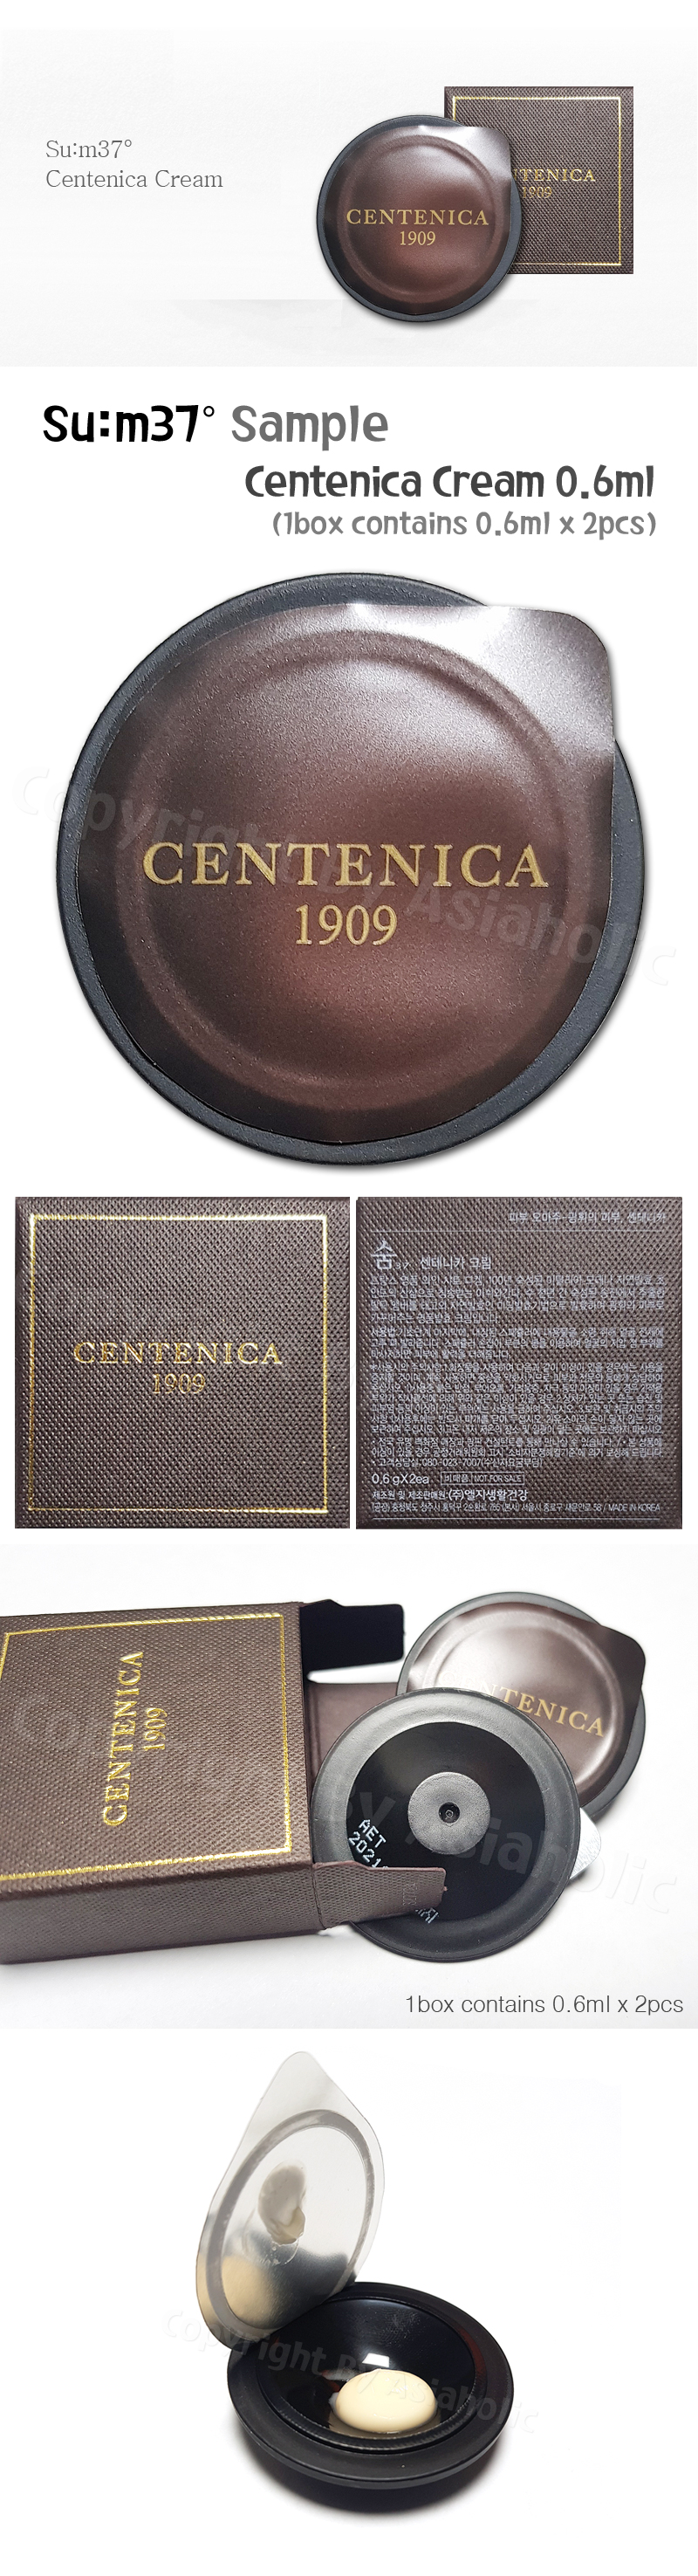 SU:M37 Centenica Cream 0.6ml x 20pcs (10Box) Premium Sample Sum37 Newest Version